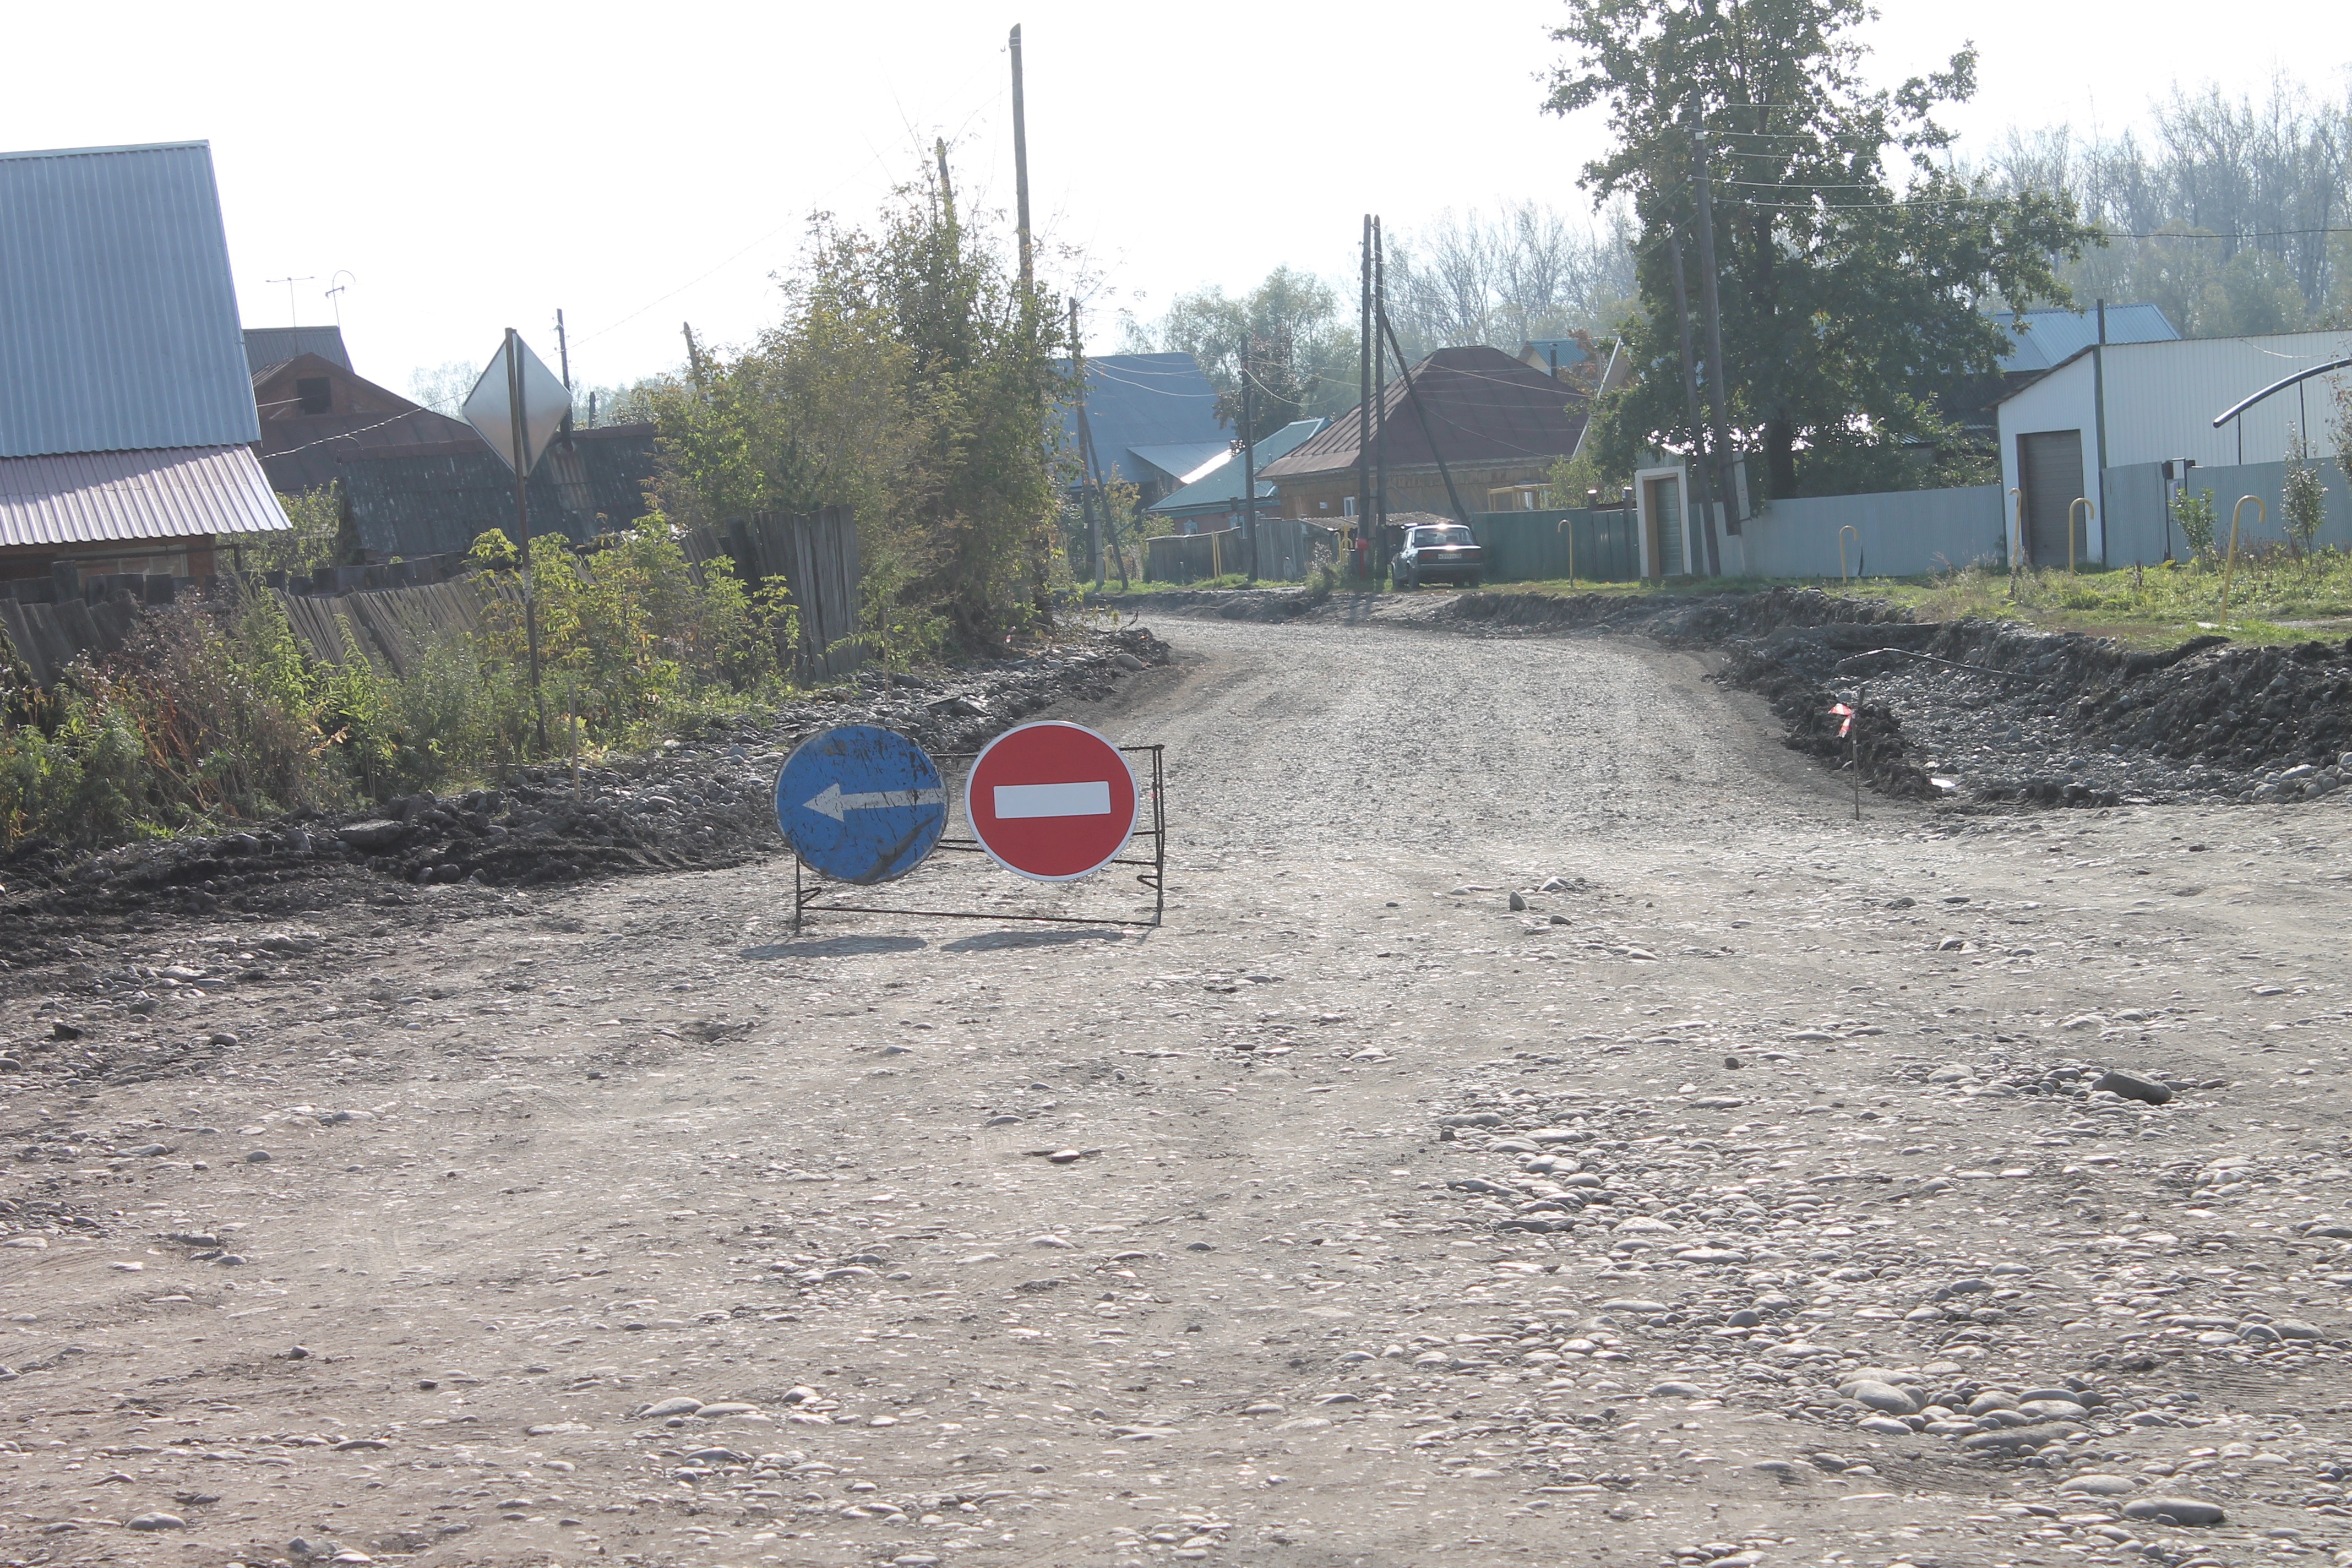 Активисты ОНФ в Республике Алтай провели рейд в рамках проекта «Дорожная инспекция ОНФ/Карта убитых дорог»